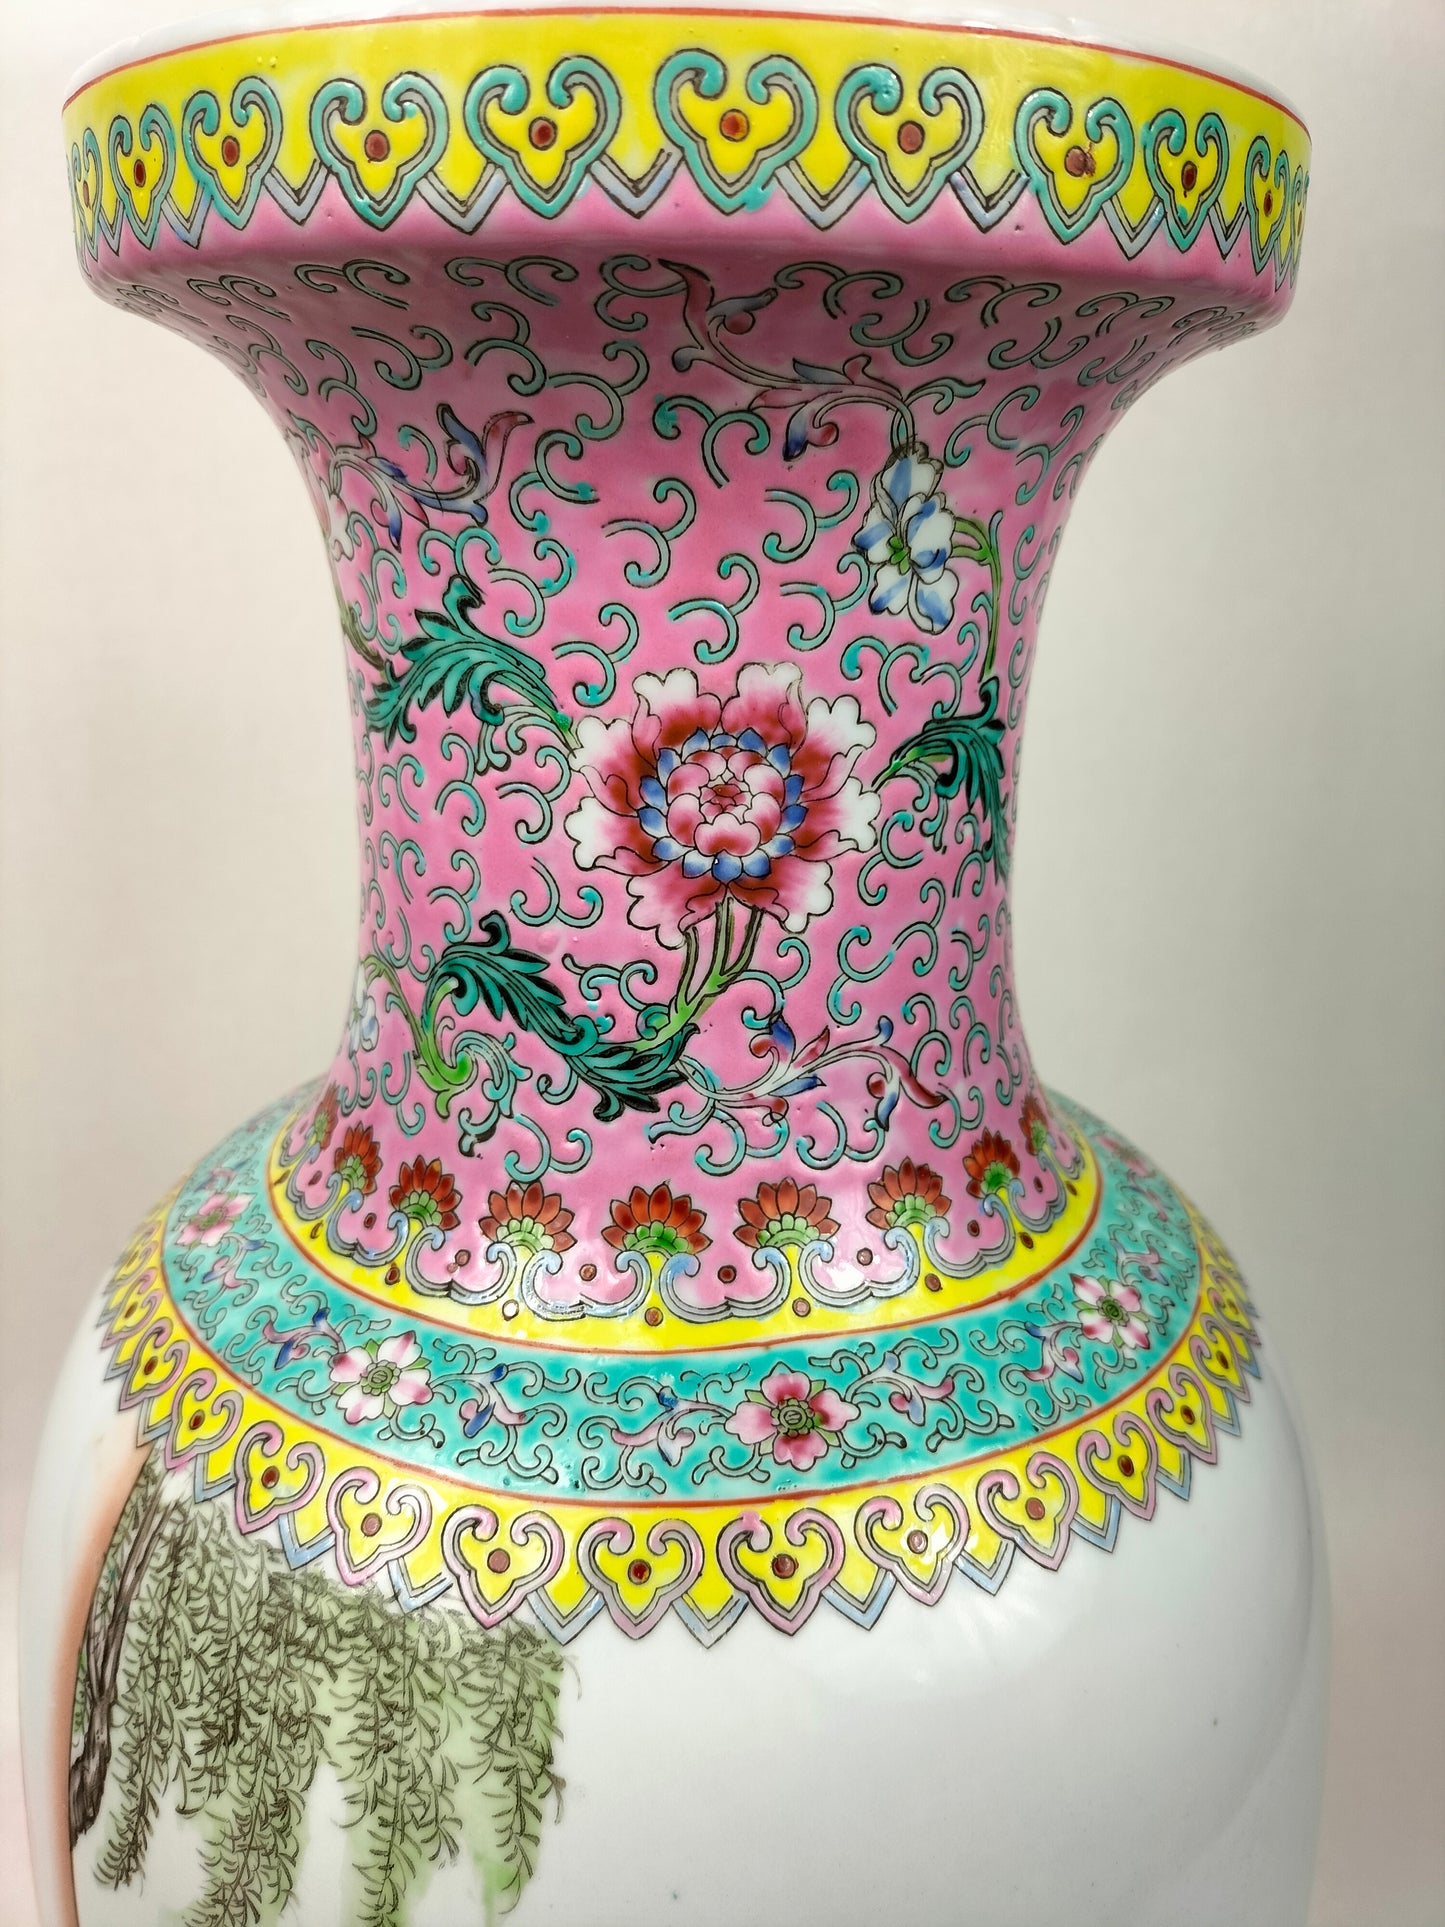 Grand vase chinois famille rose à personnages // Jingdezhen - 20ème siècle